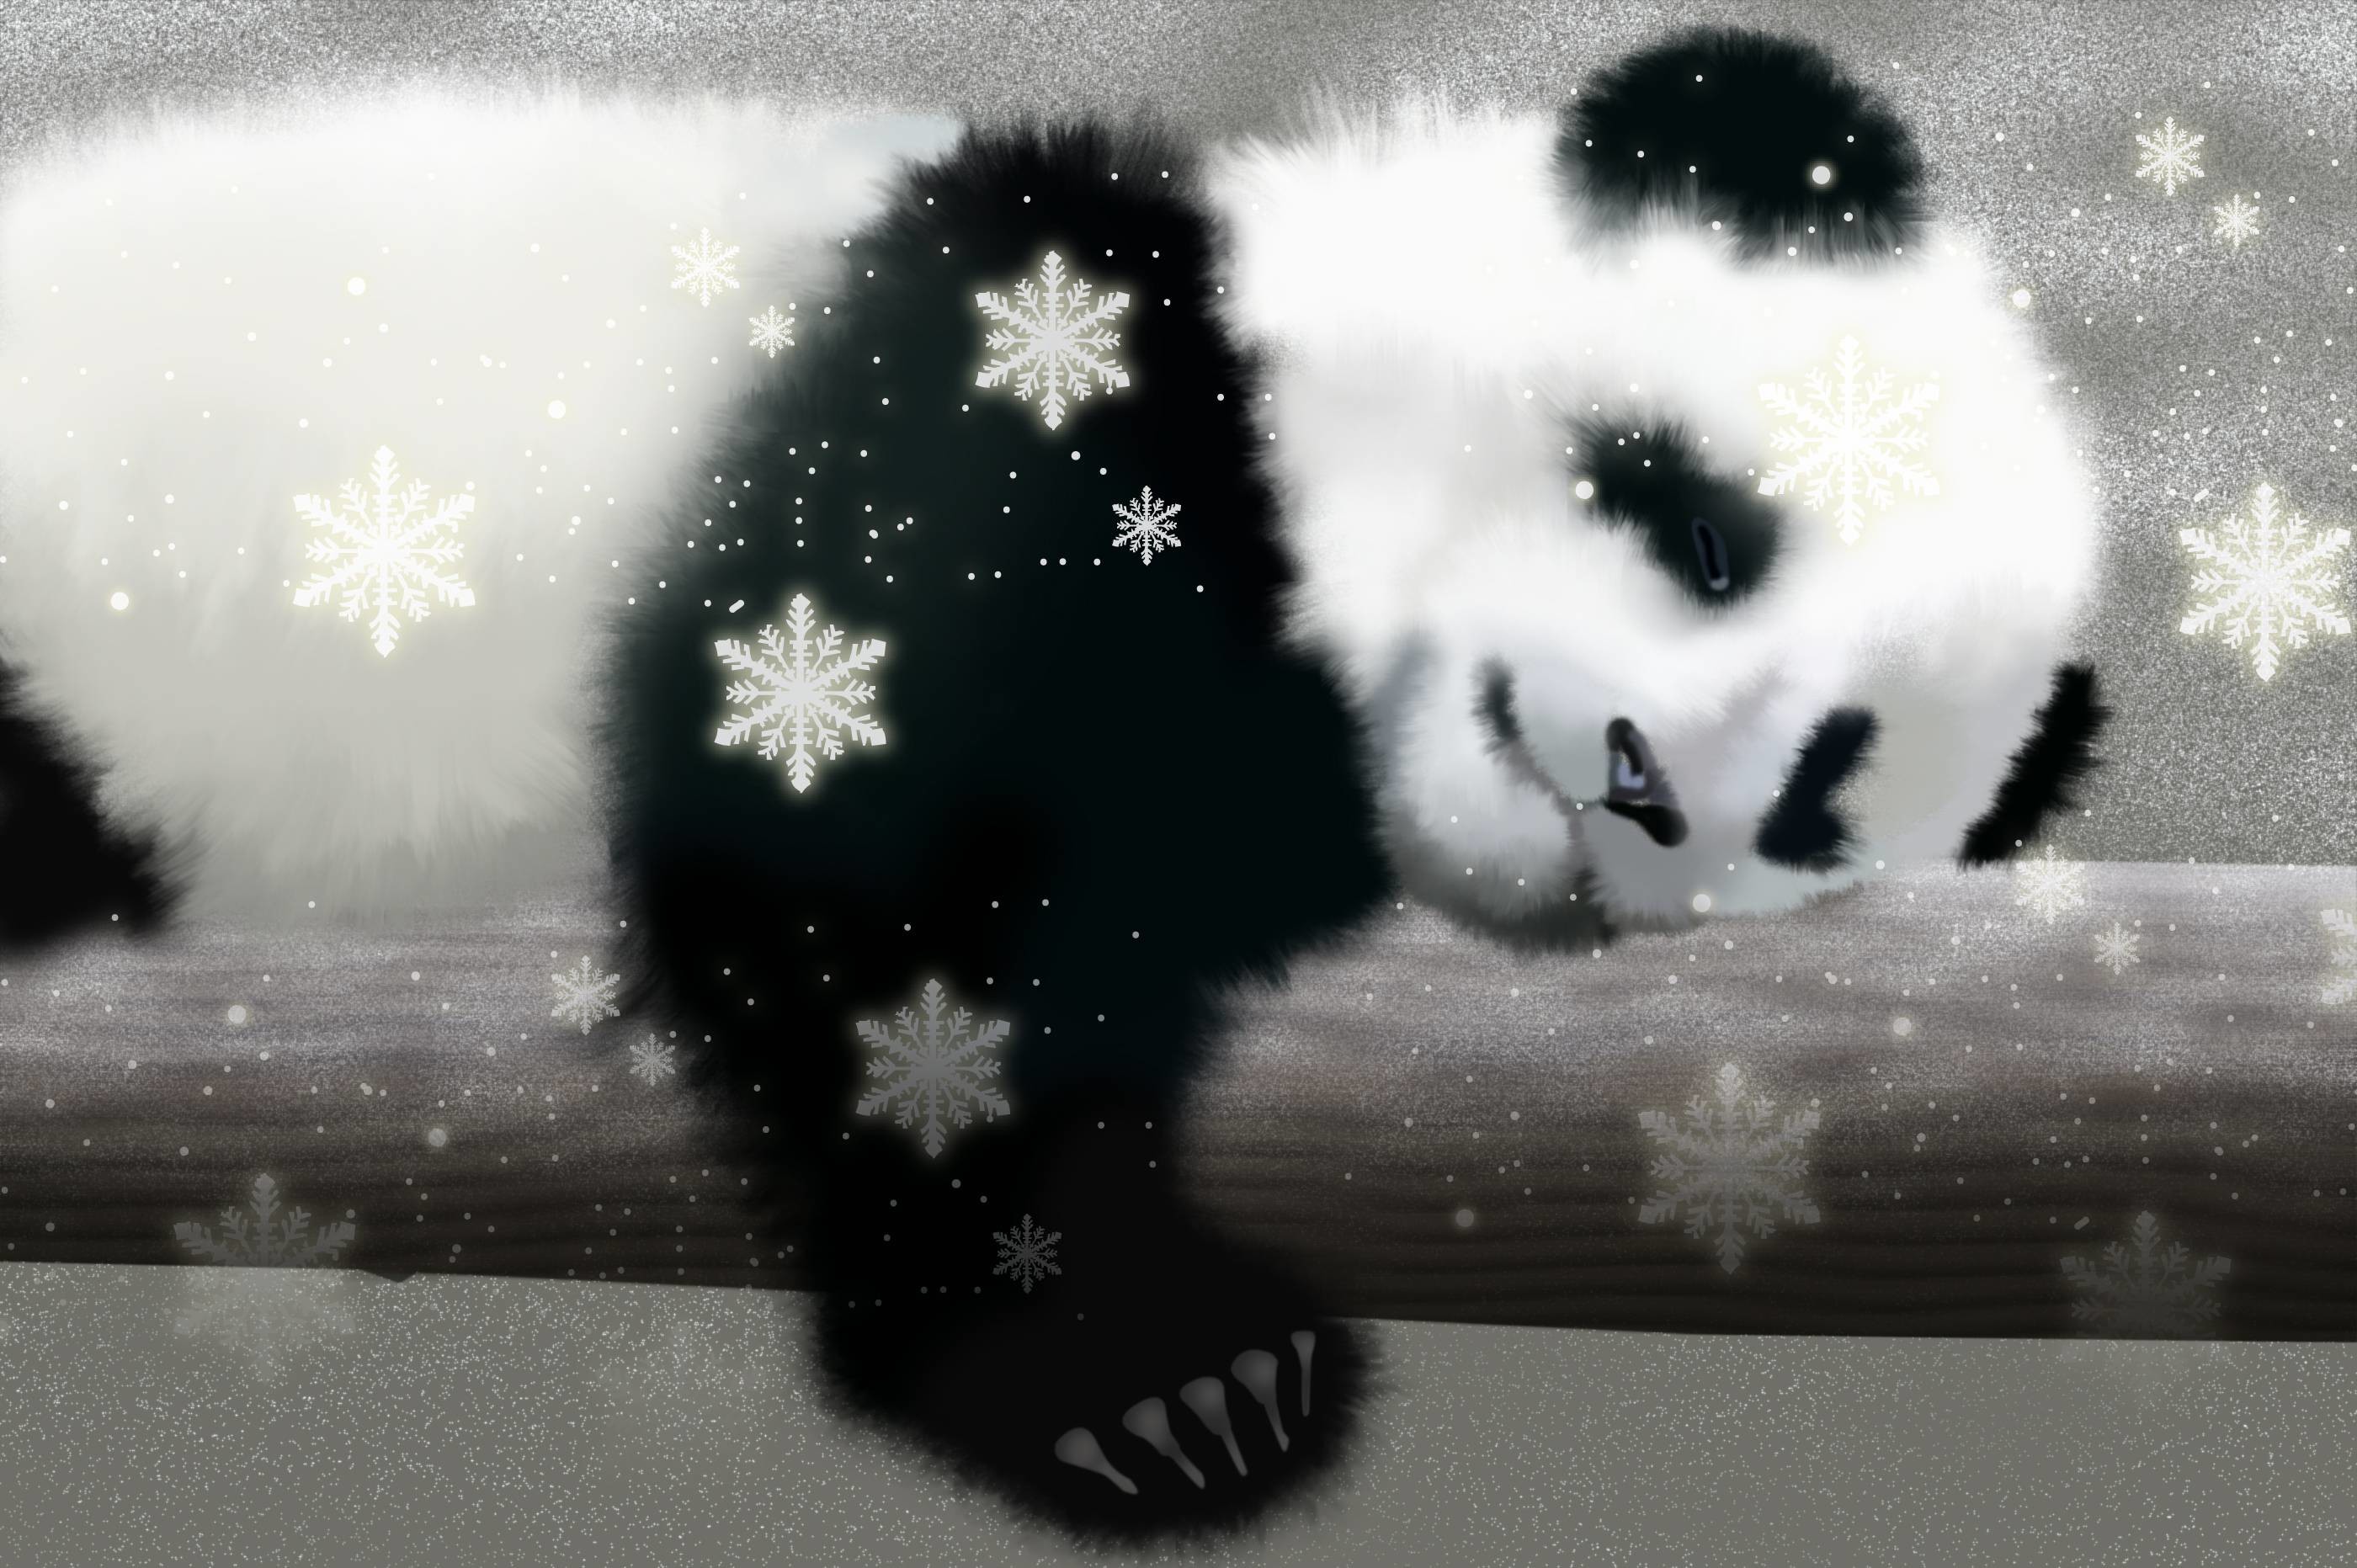 baby panda cartoon wallpaper